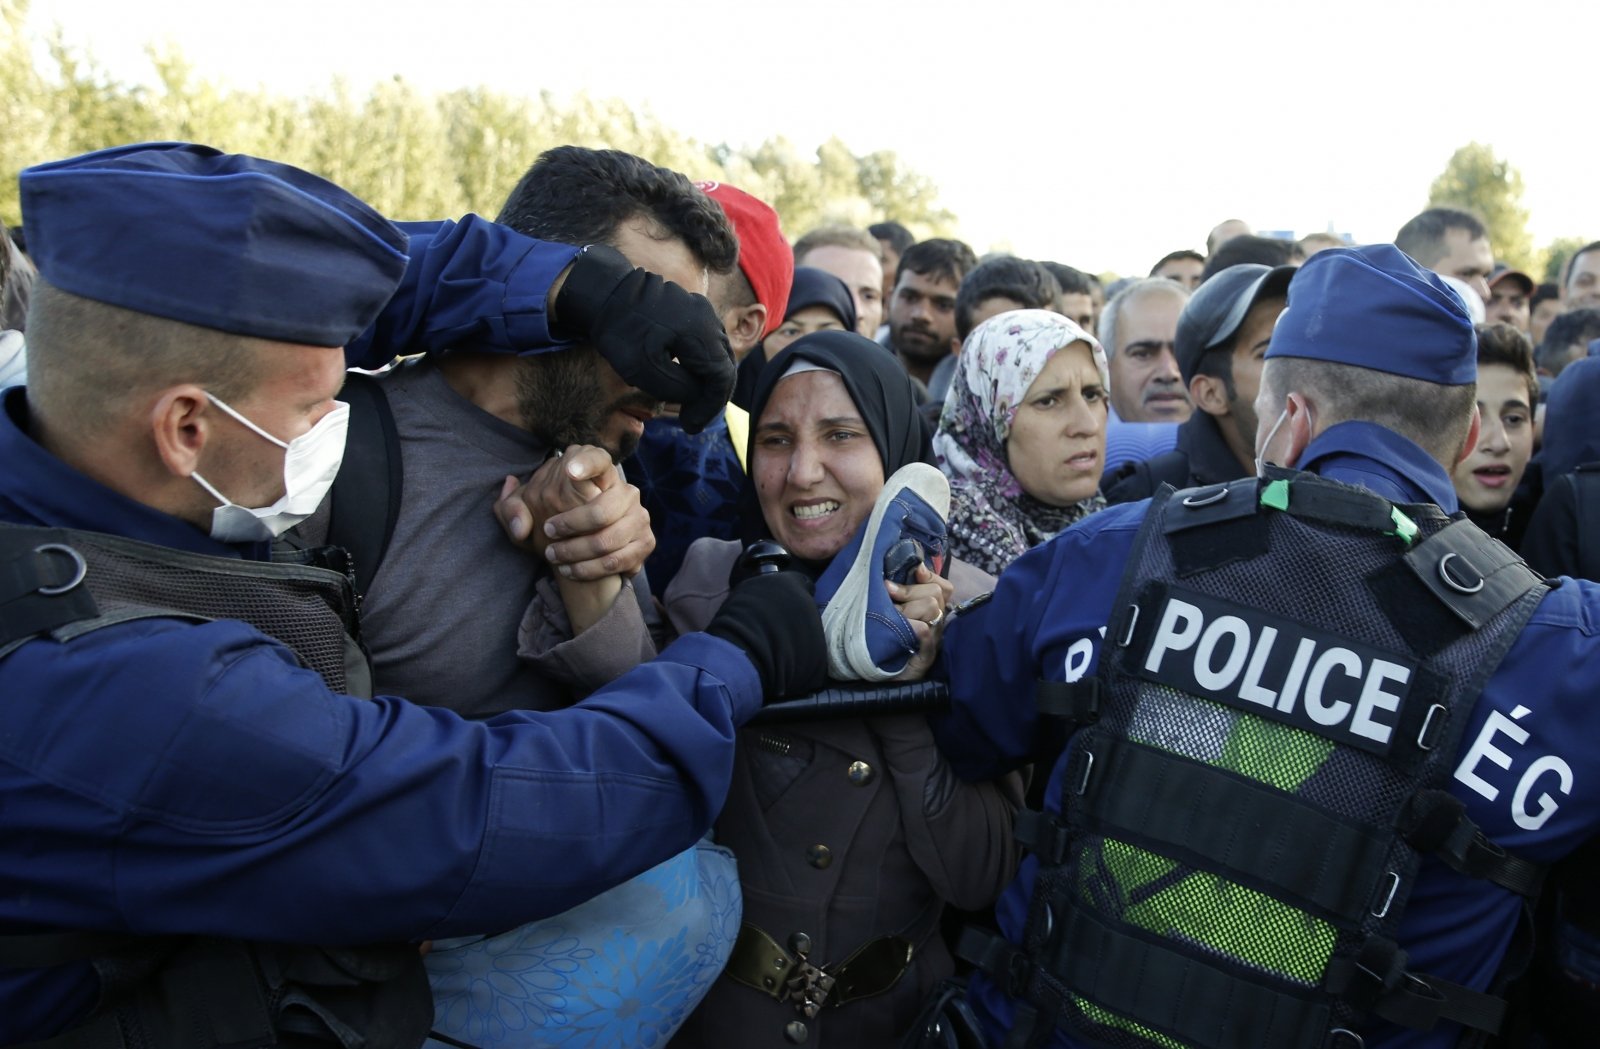 Η Ουγγαρία συγκροτεί «κινητά δικαστήρια» για να διώκει τους πρόσφυγες που εισέρχονται «παράνομα» στη χώρα